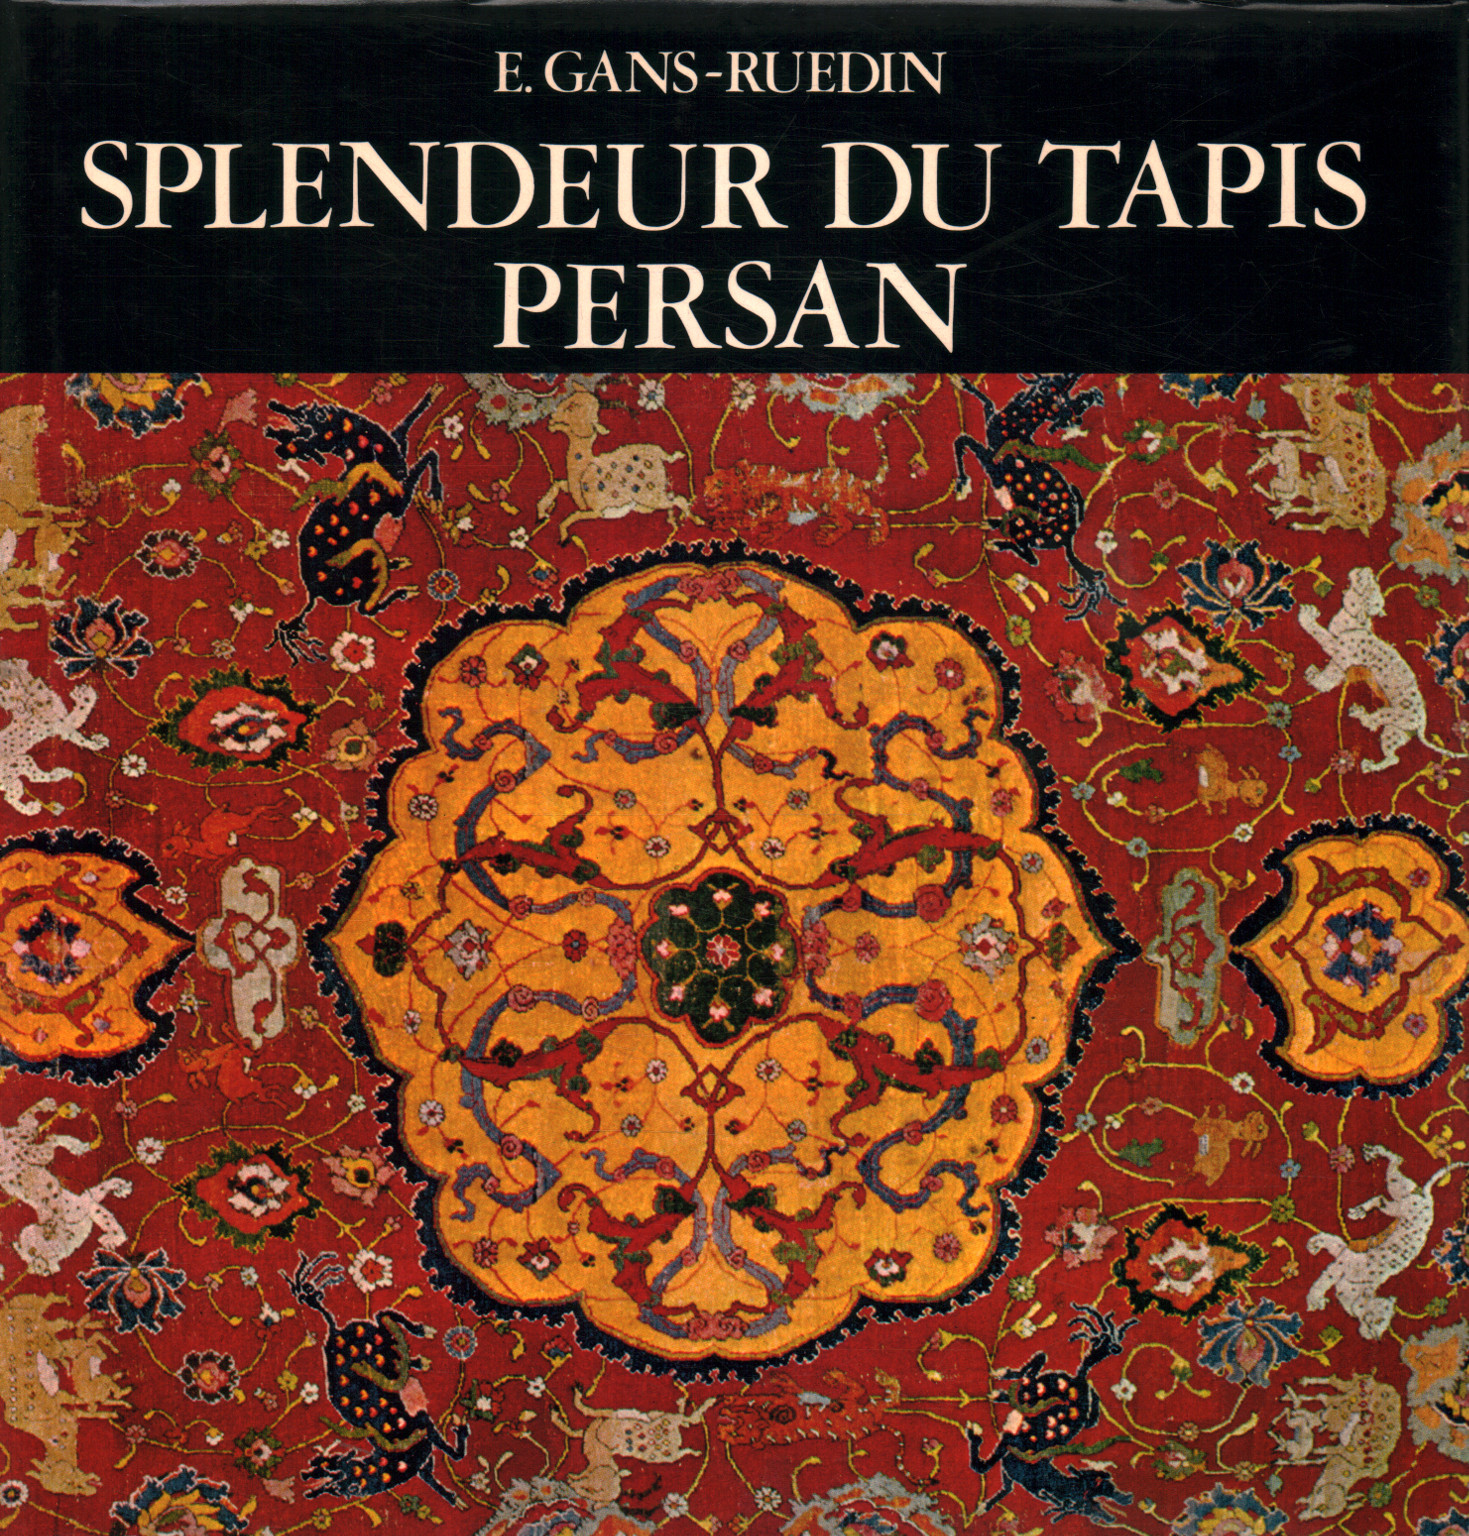 Splendeur du tapis persan, E. Gans - Ruedin